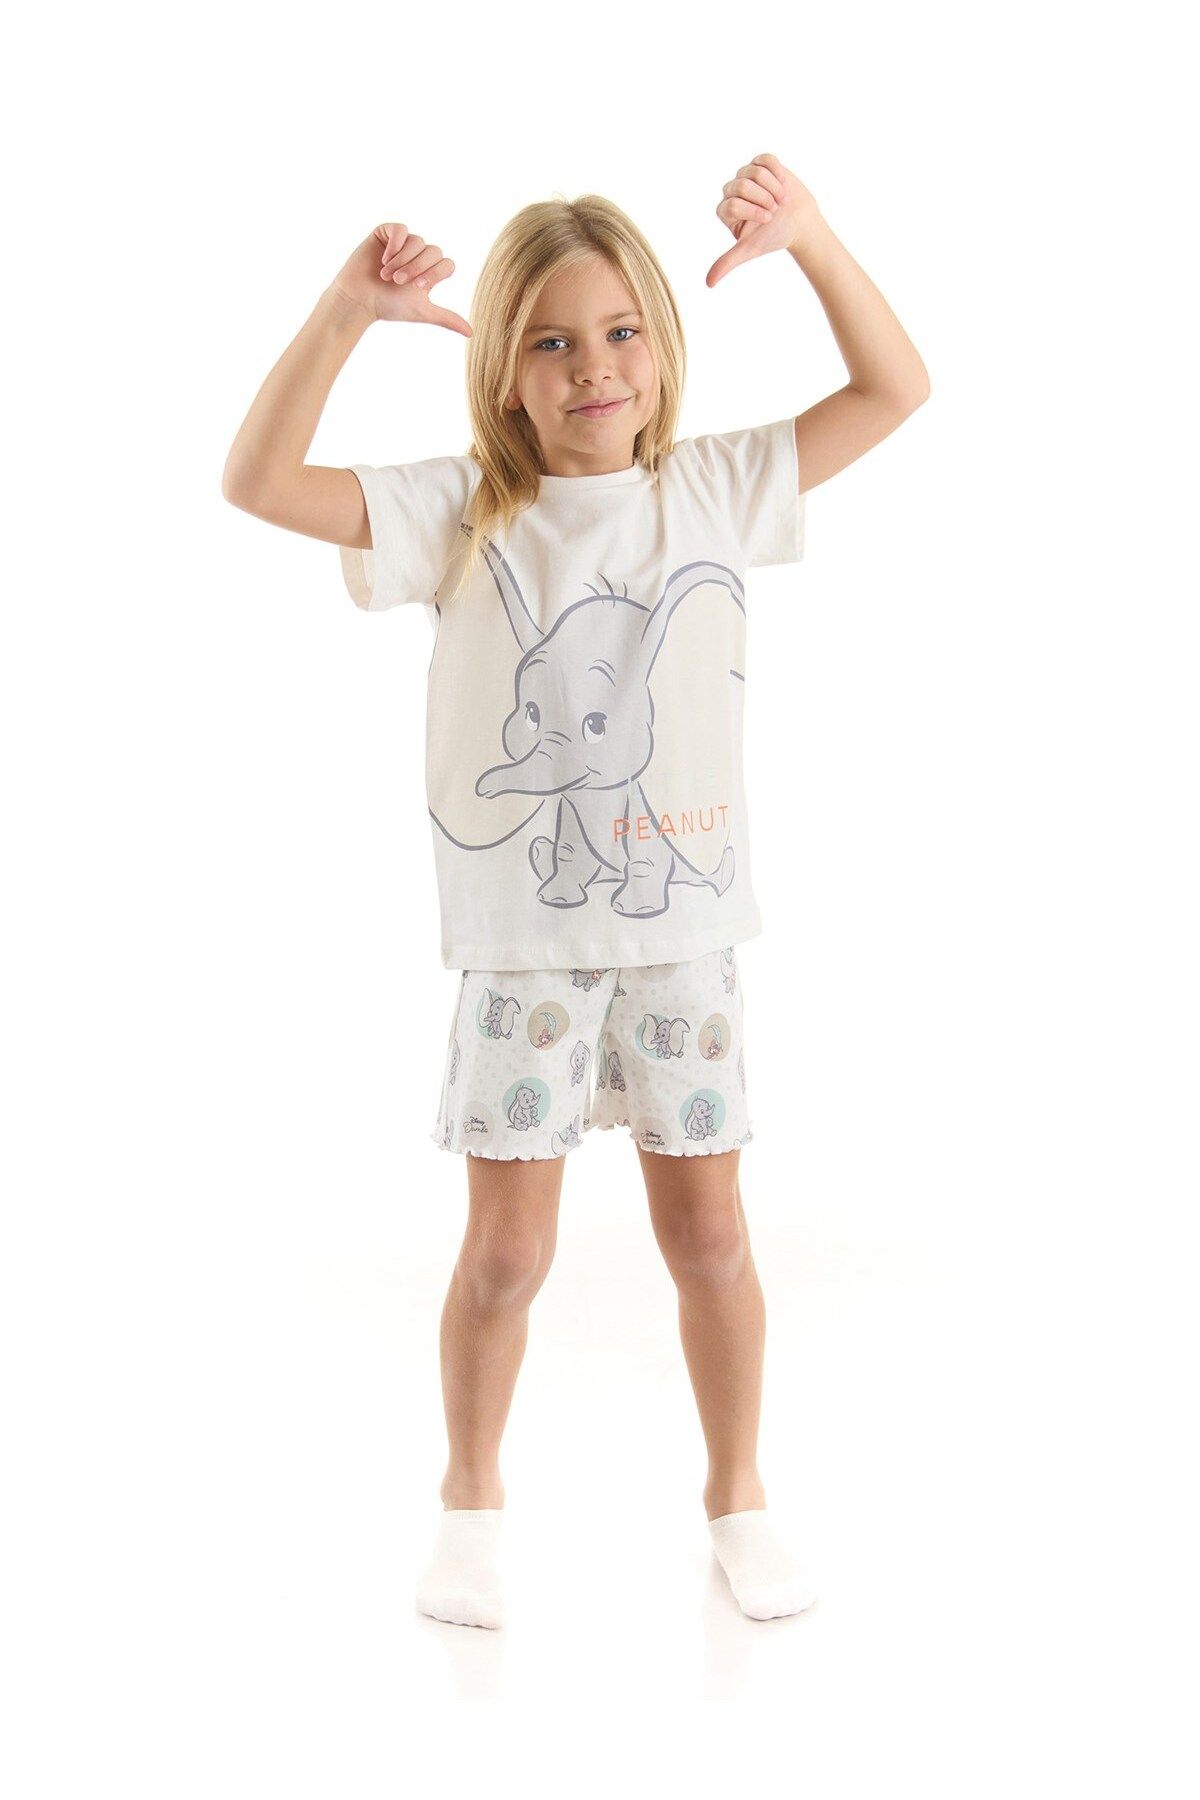 DİSNEY Dumbo Lisanslı Kız Çocuk Tişört Ve Şortlu Pijama Takımı 20973